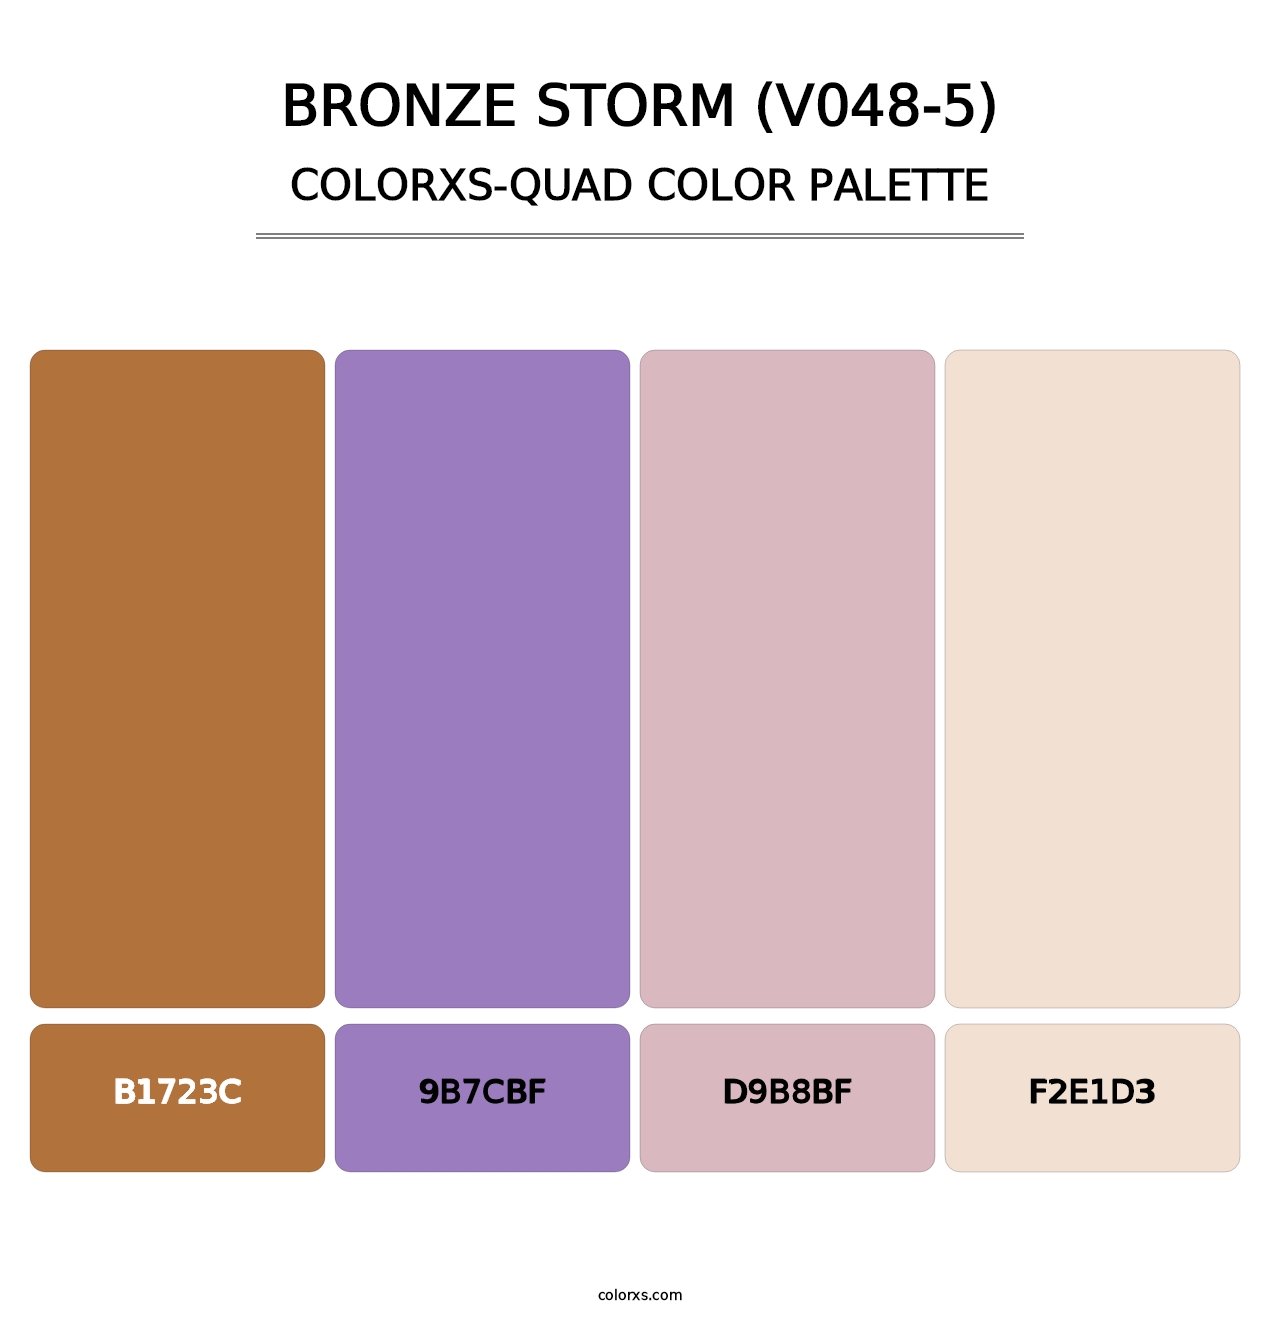 Bronze Storm (V048-5) - Colorxs Quad Palette